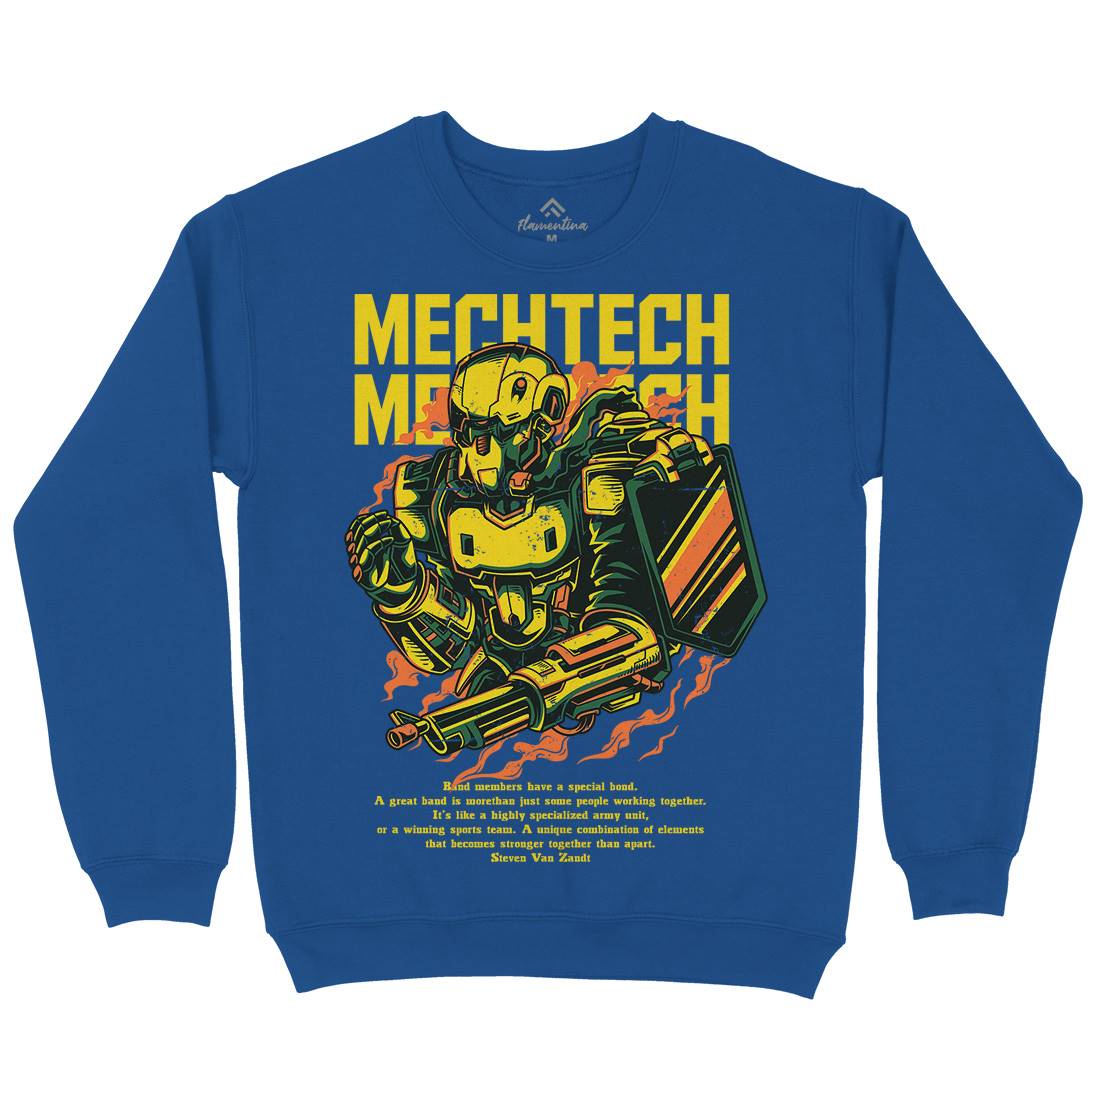 Mech Tech Kids Crew Neck Sweatshirt Army D650